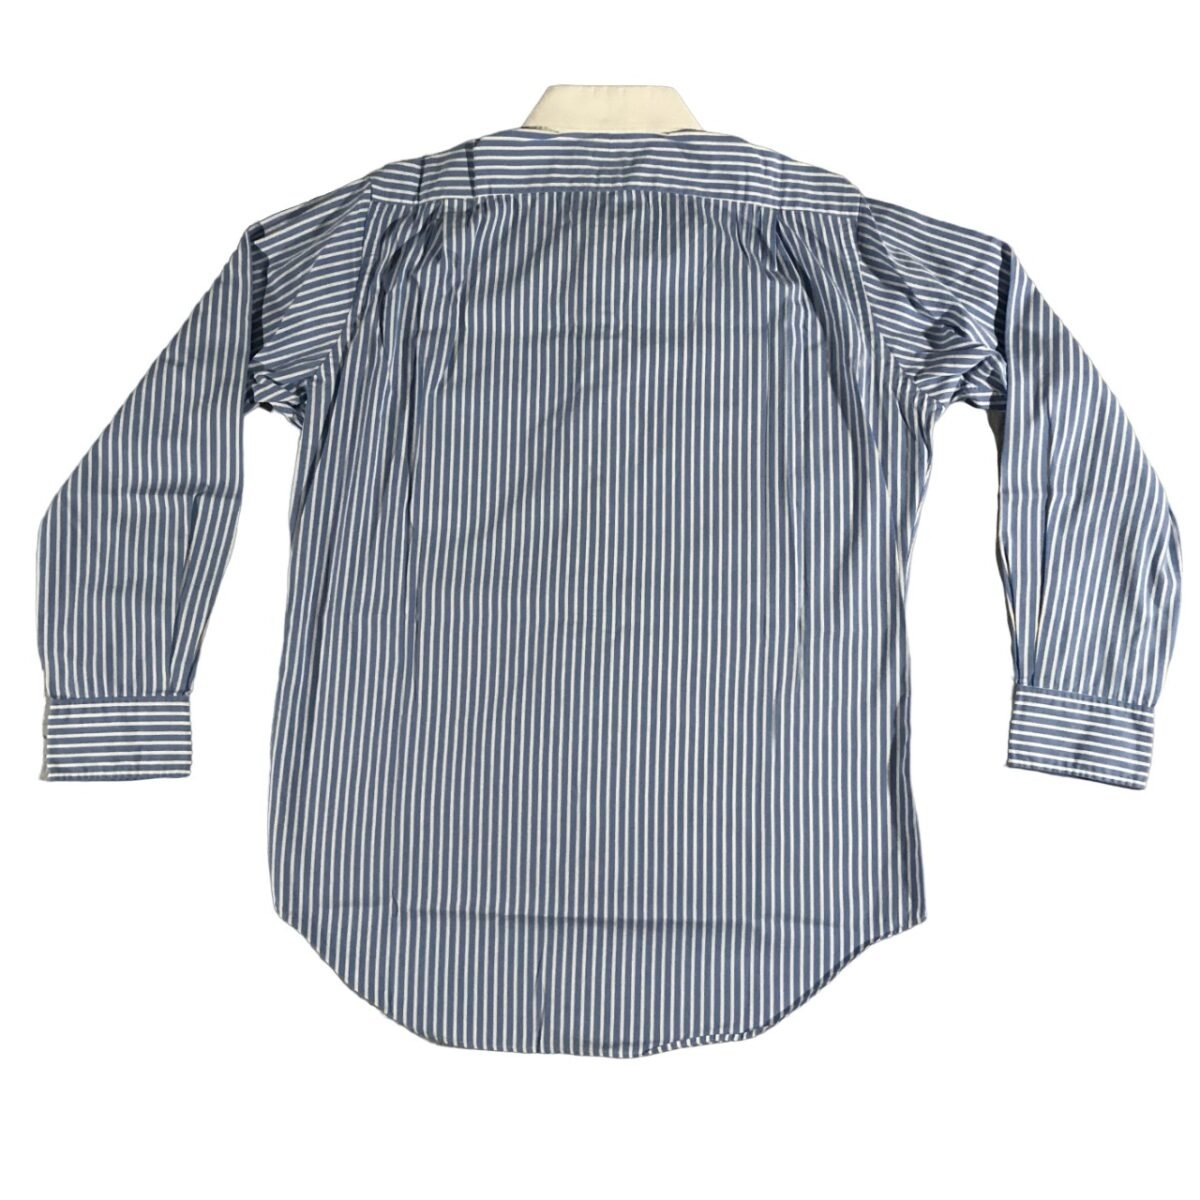 Shirt Polo Ralph Lauren light blue white collar